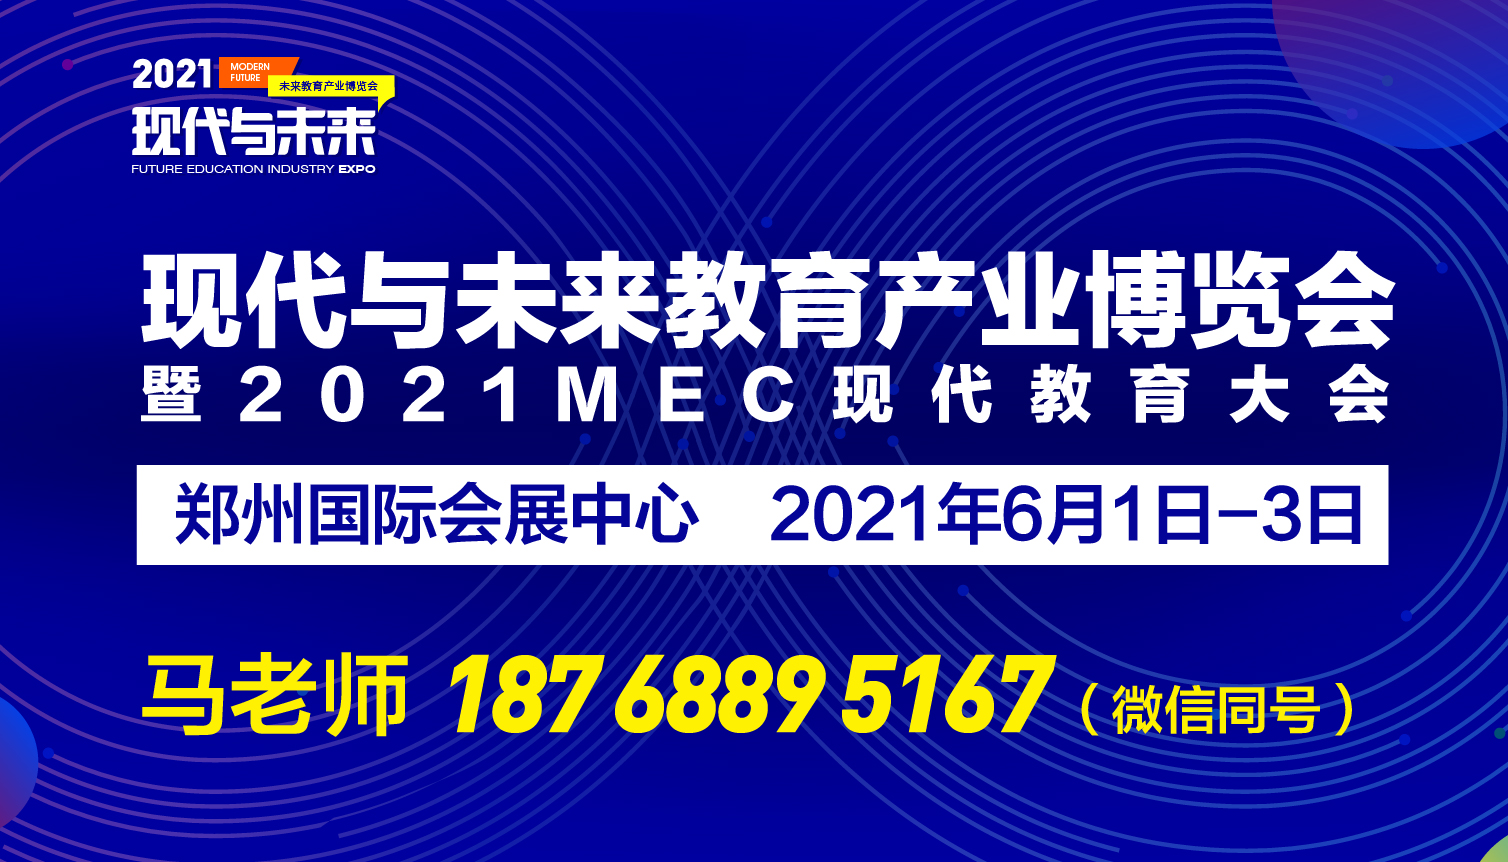 2021MEC现代教育大会暨现代与未来教育产业博览会